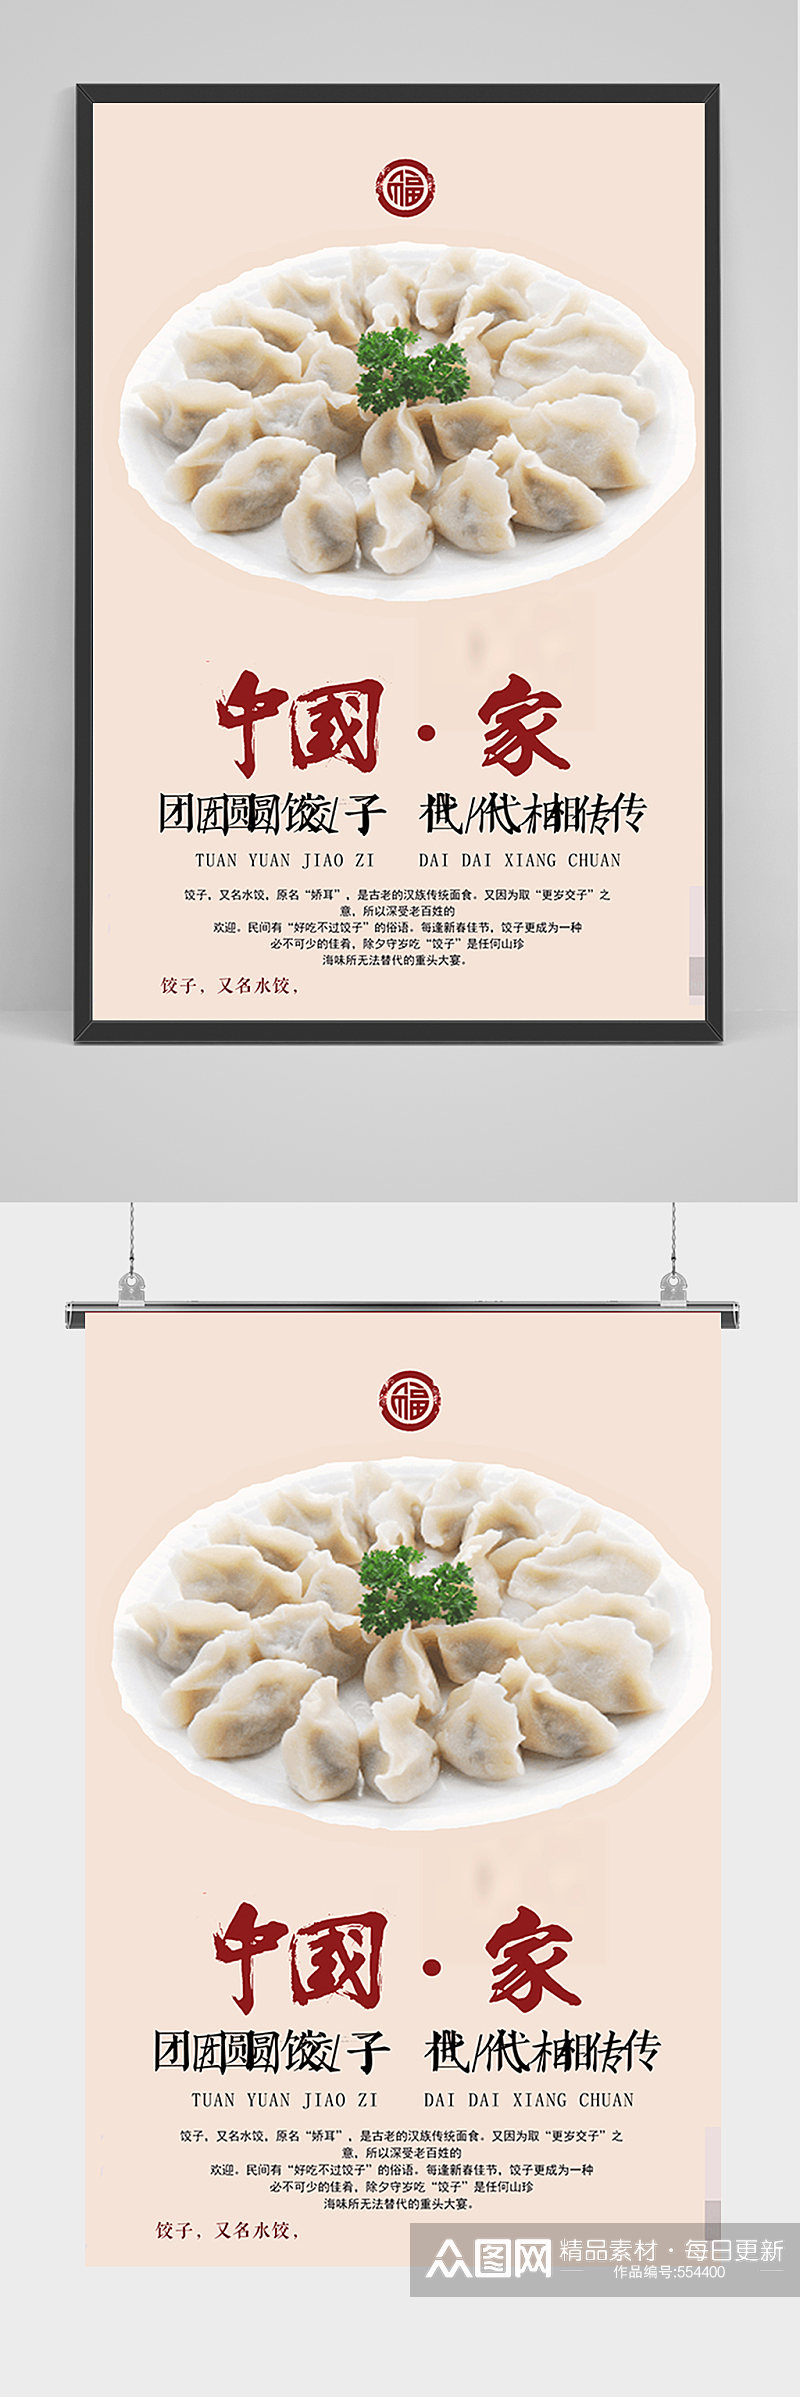 简约中国饺子海报素材